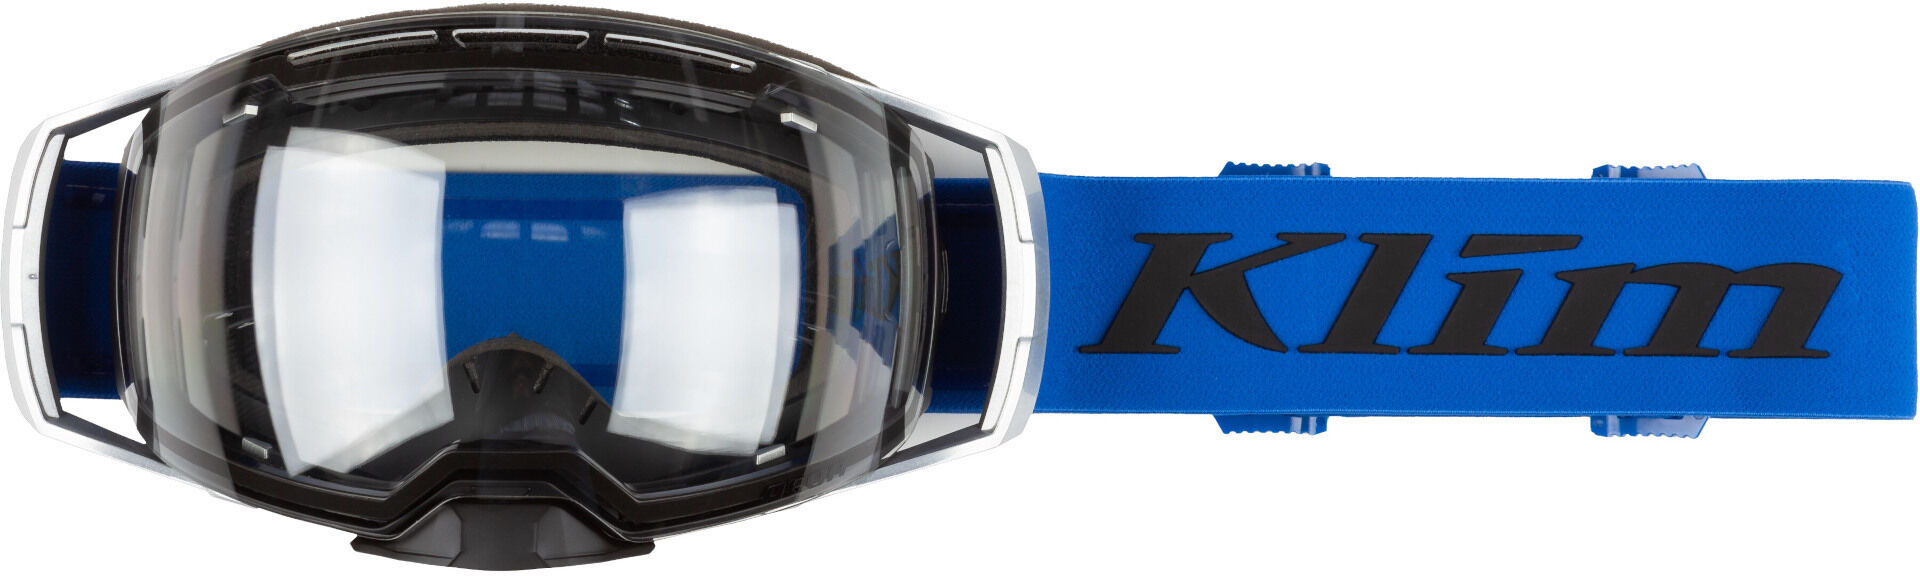 Klim Aeon occhiali per motoslitte auto-colorati trasparente unica taglia